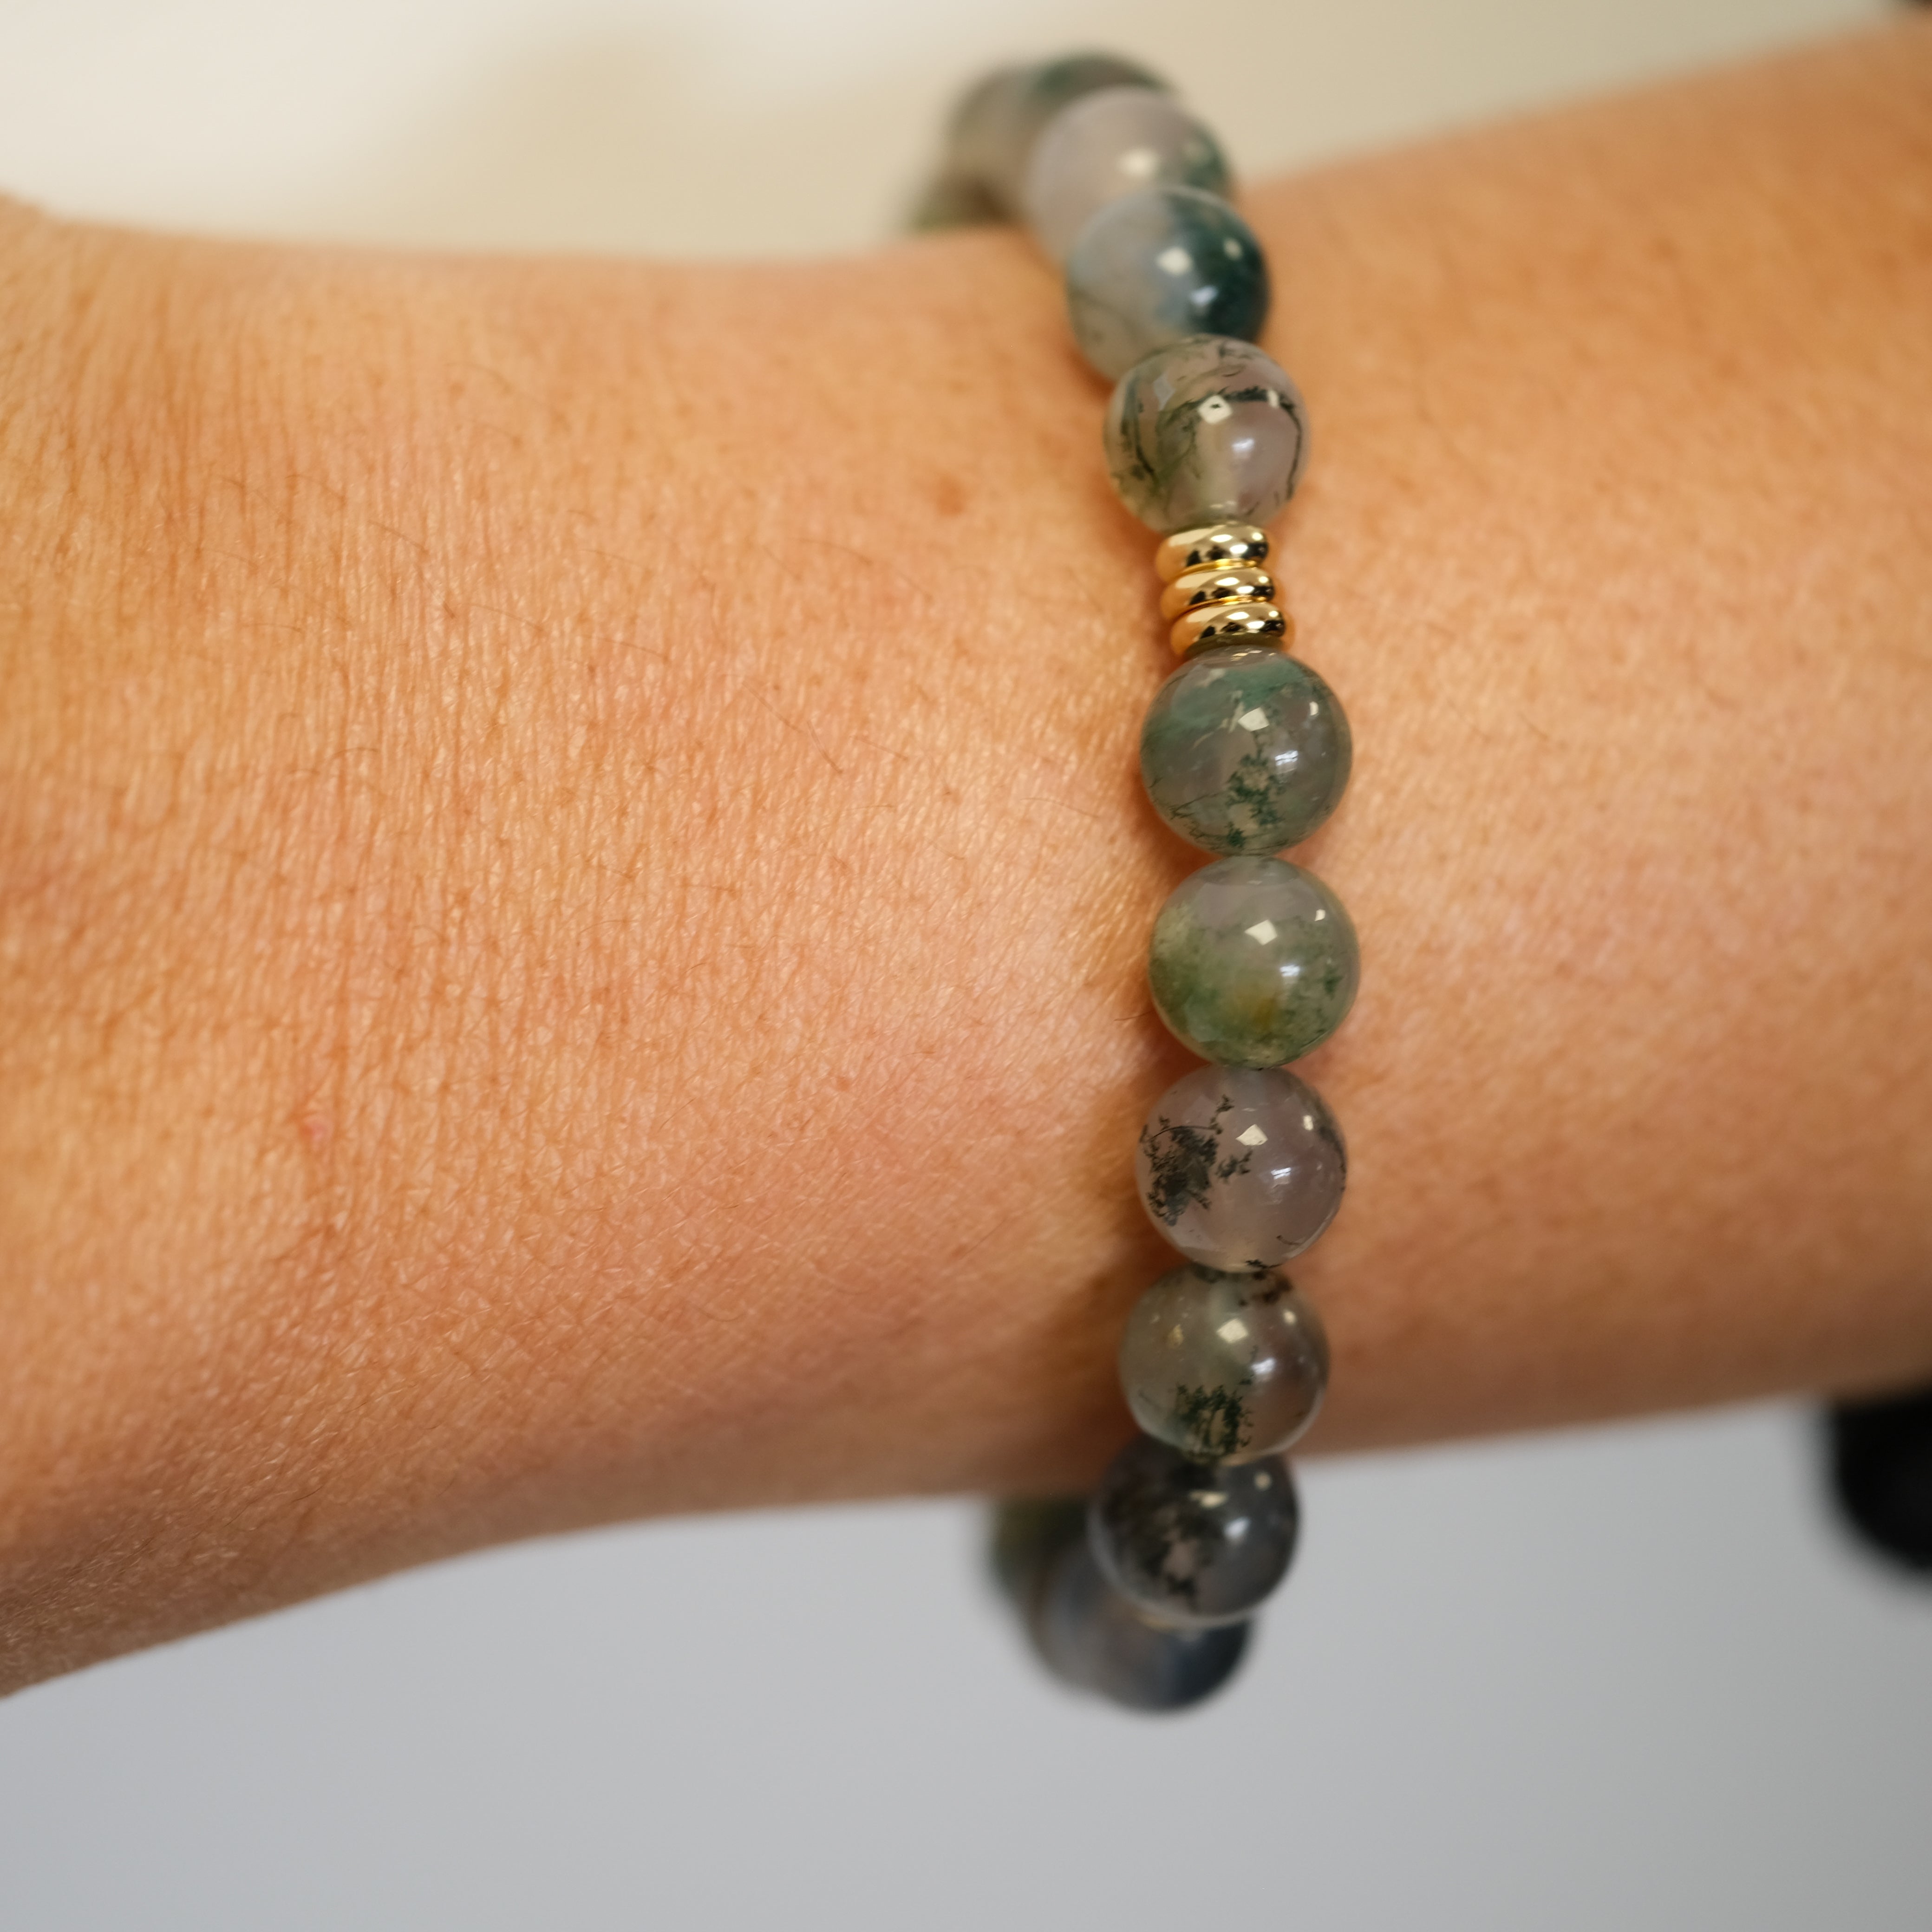 A moss agate gemstone bracelet worn on a model's wrist